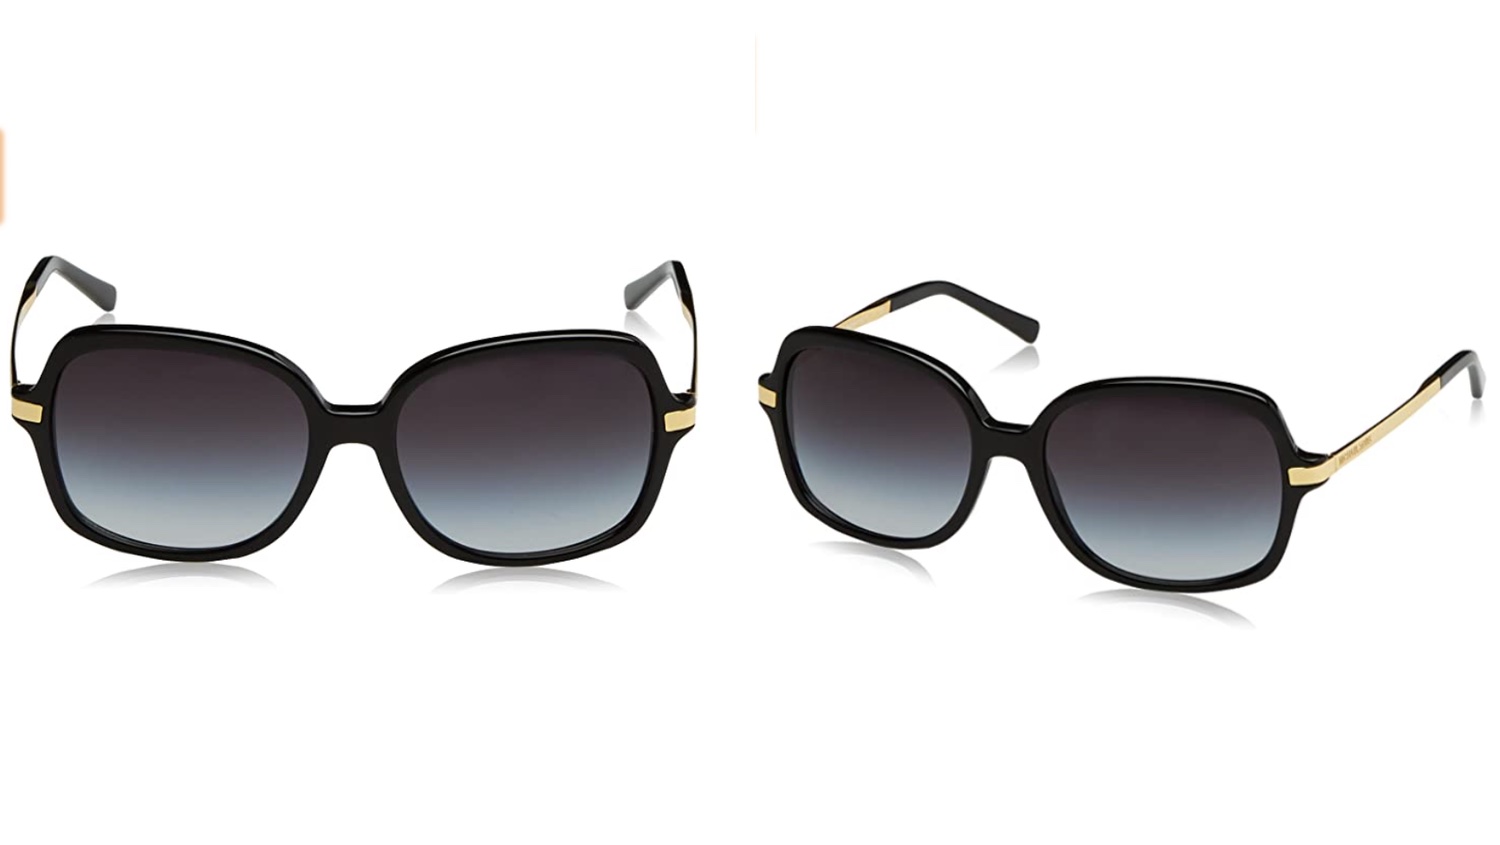 Michael Kors sunglasses on sale